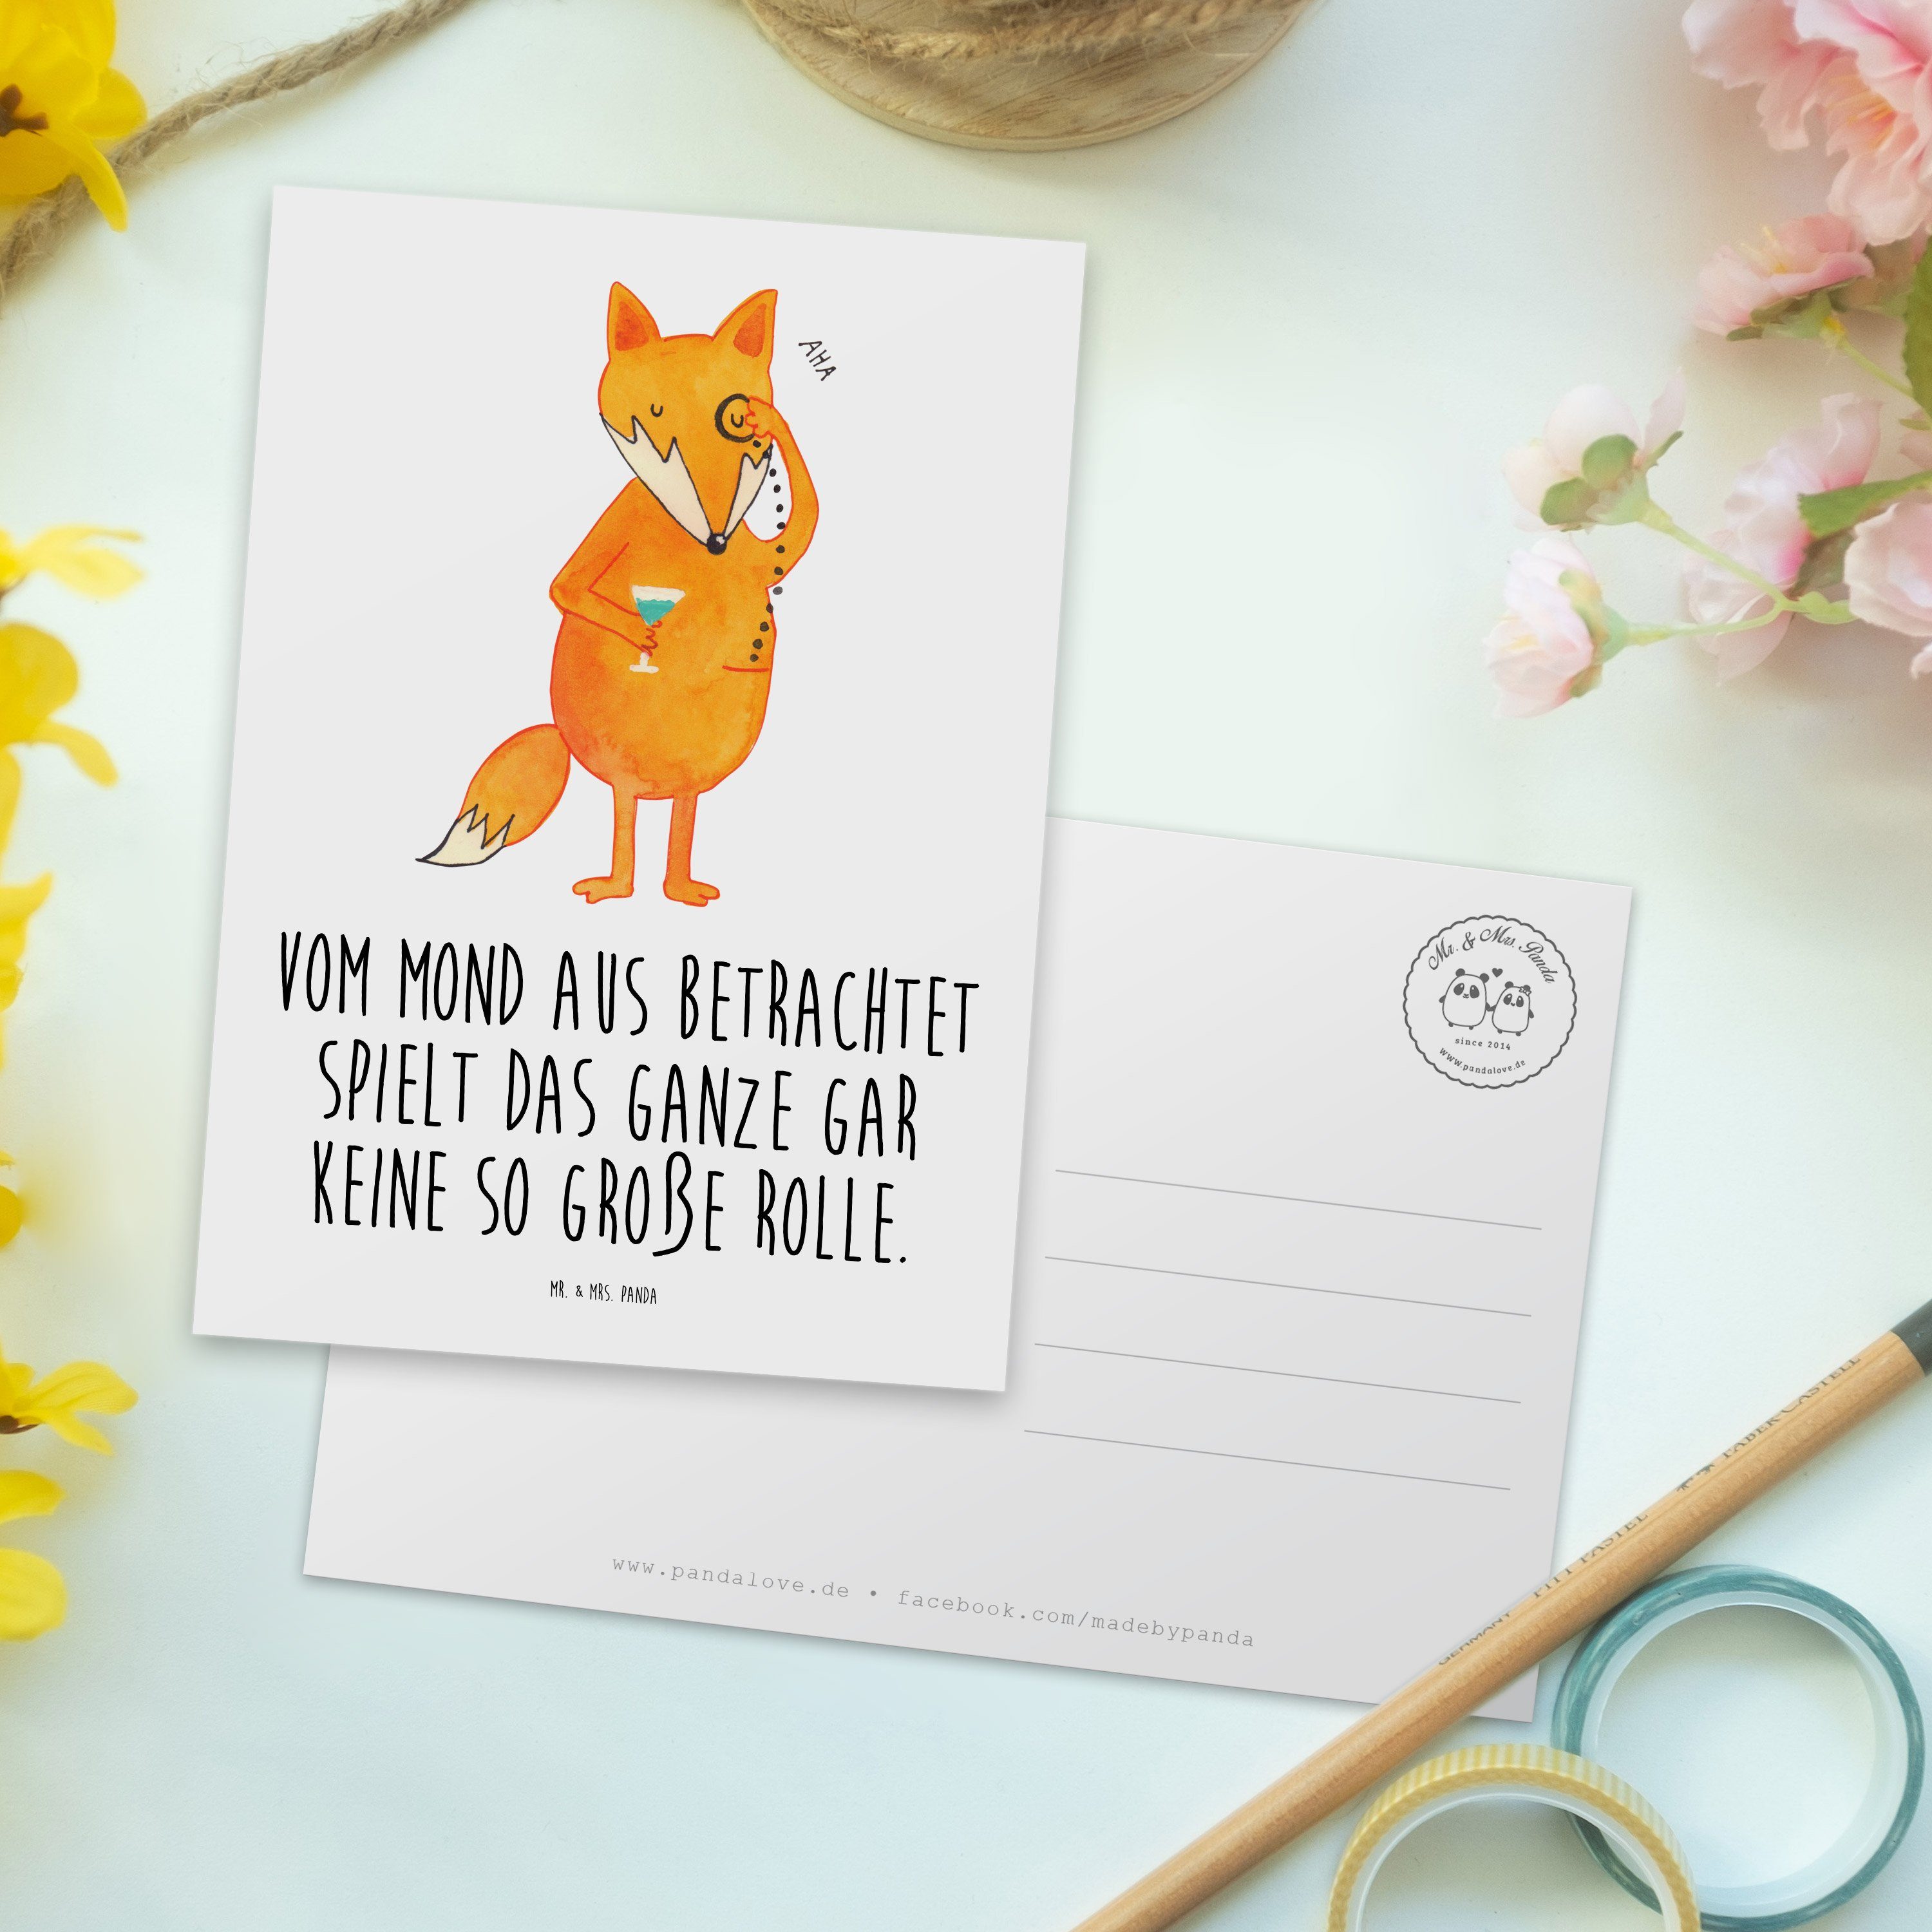 Mrs. - Weiß Panda Mr. Liebeskummer Geschenk, Fuchs & Füchse, - Geschen Postkarte Lord Einladung,